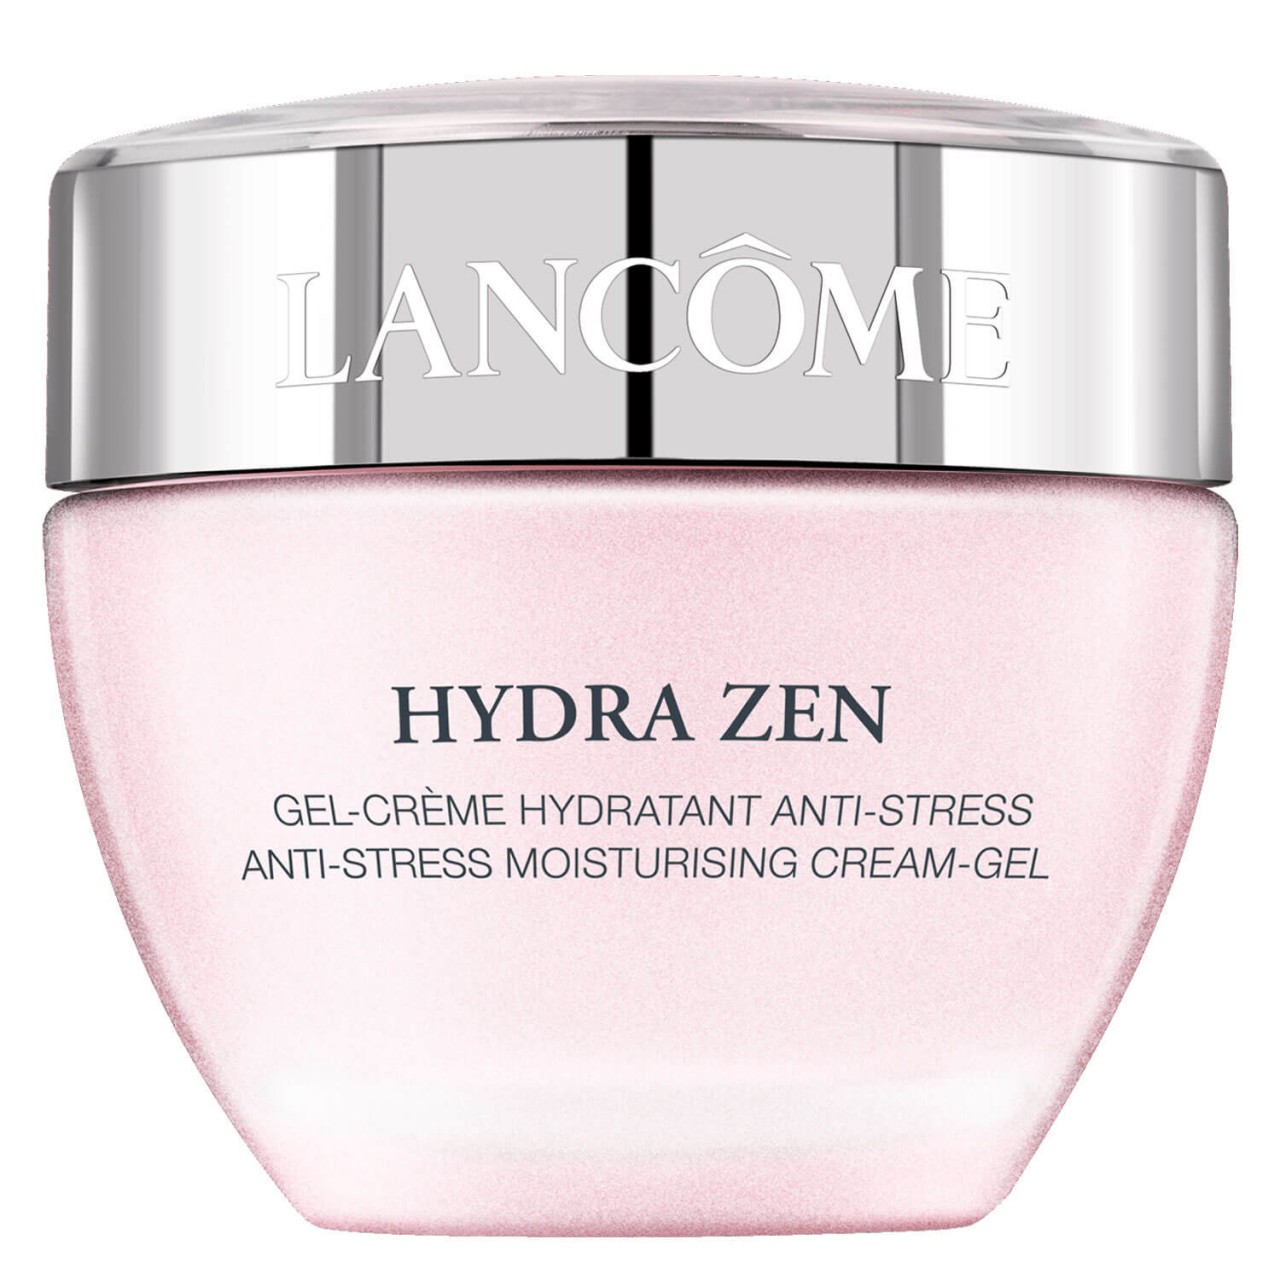 Hydra Zen - Gel-Crème von Lancôme